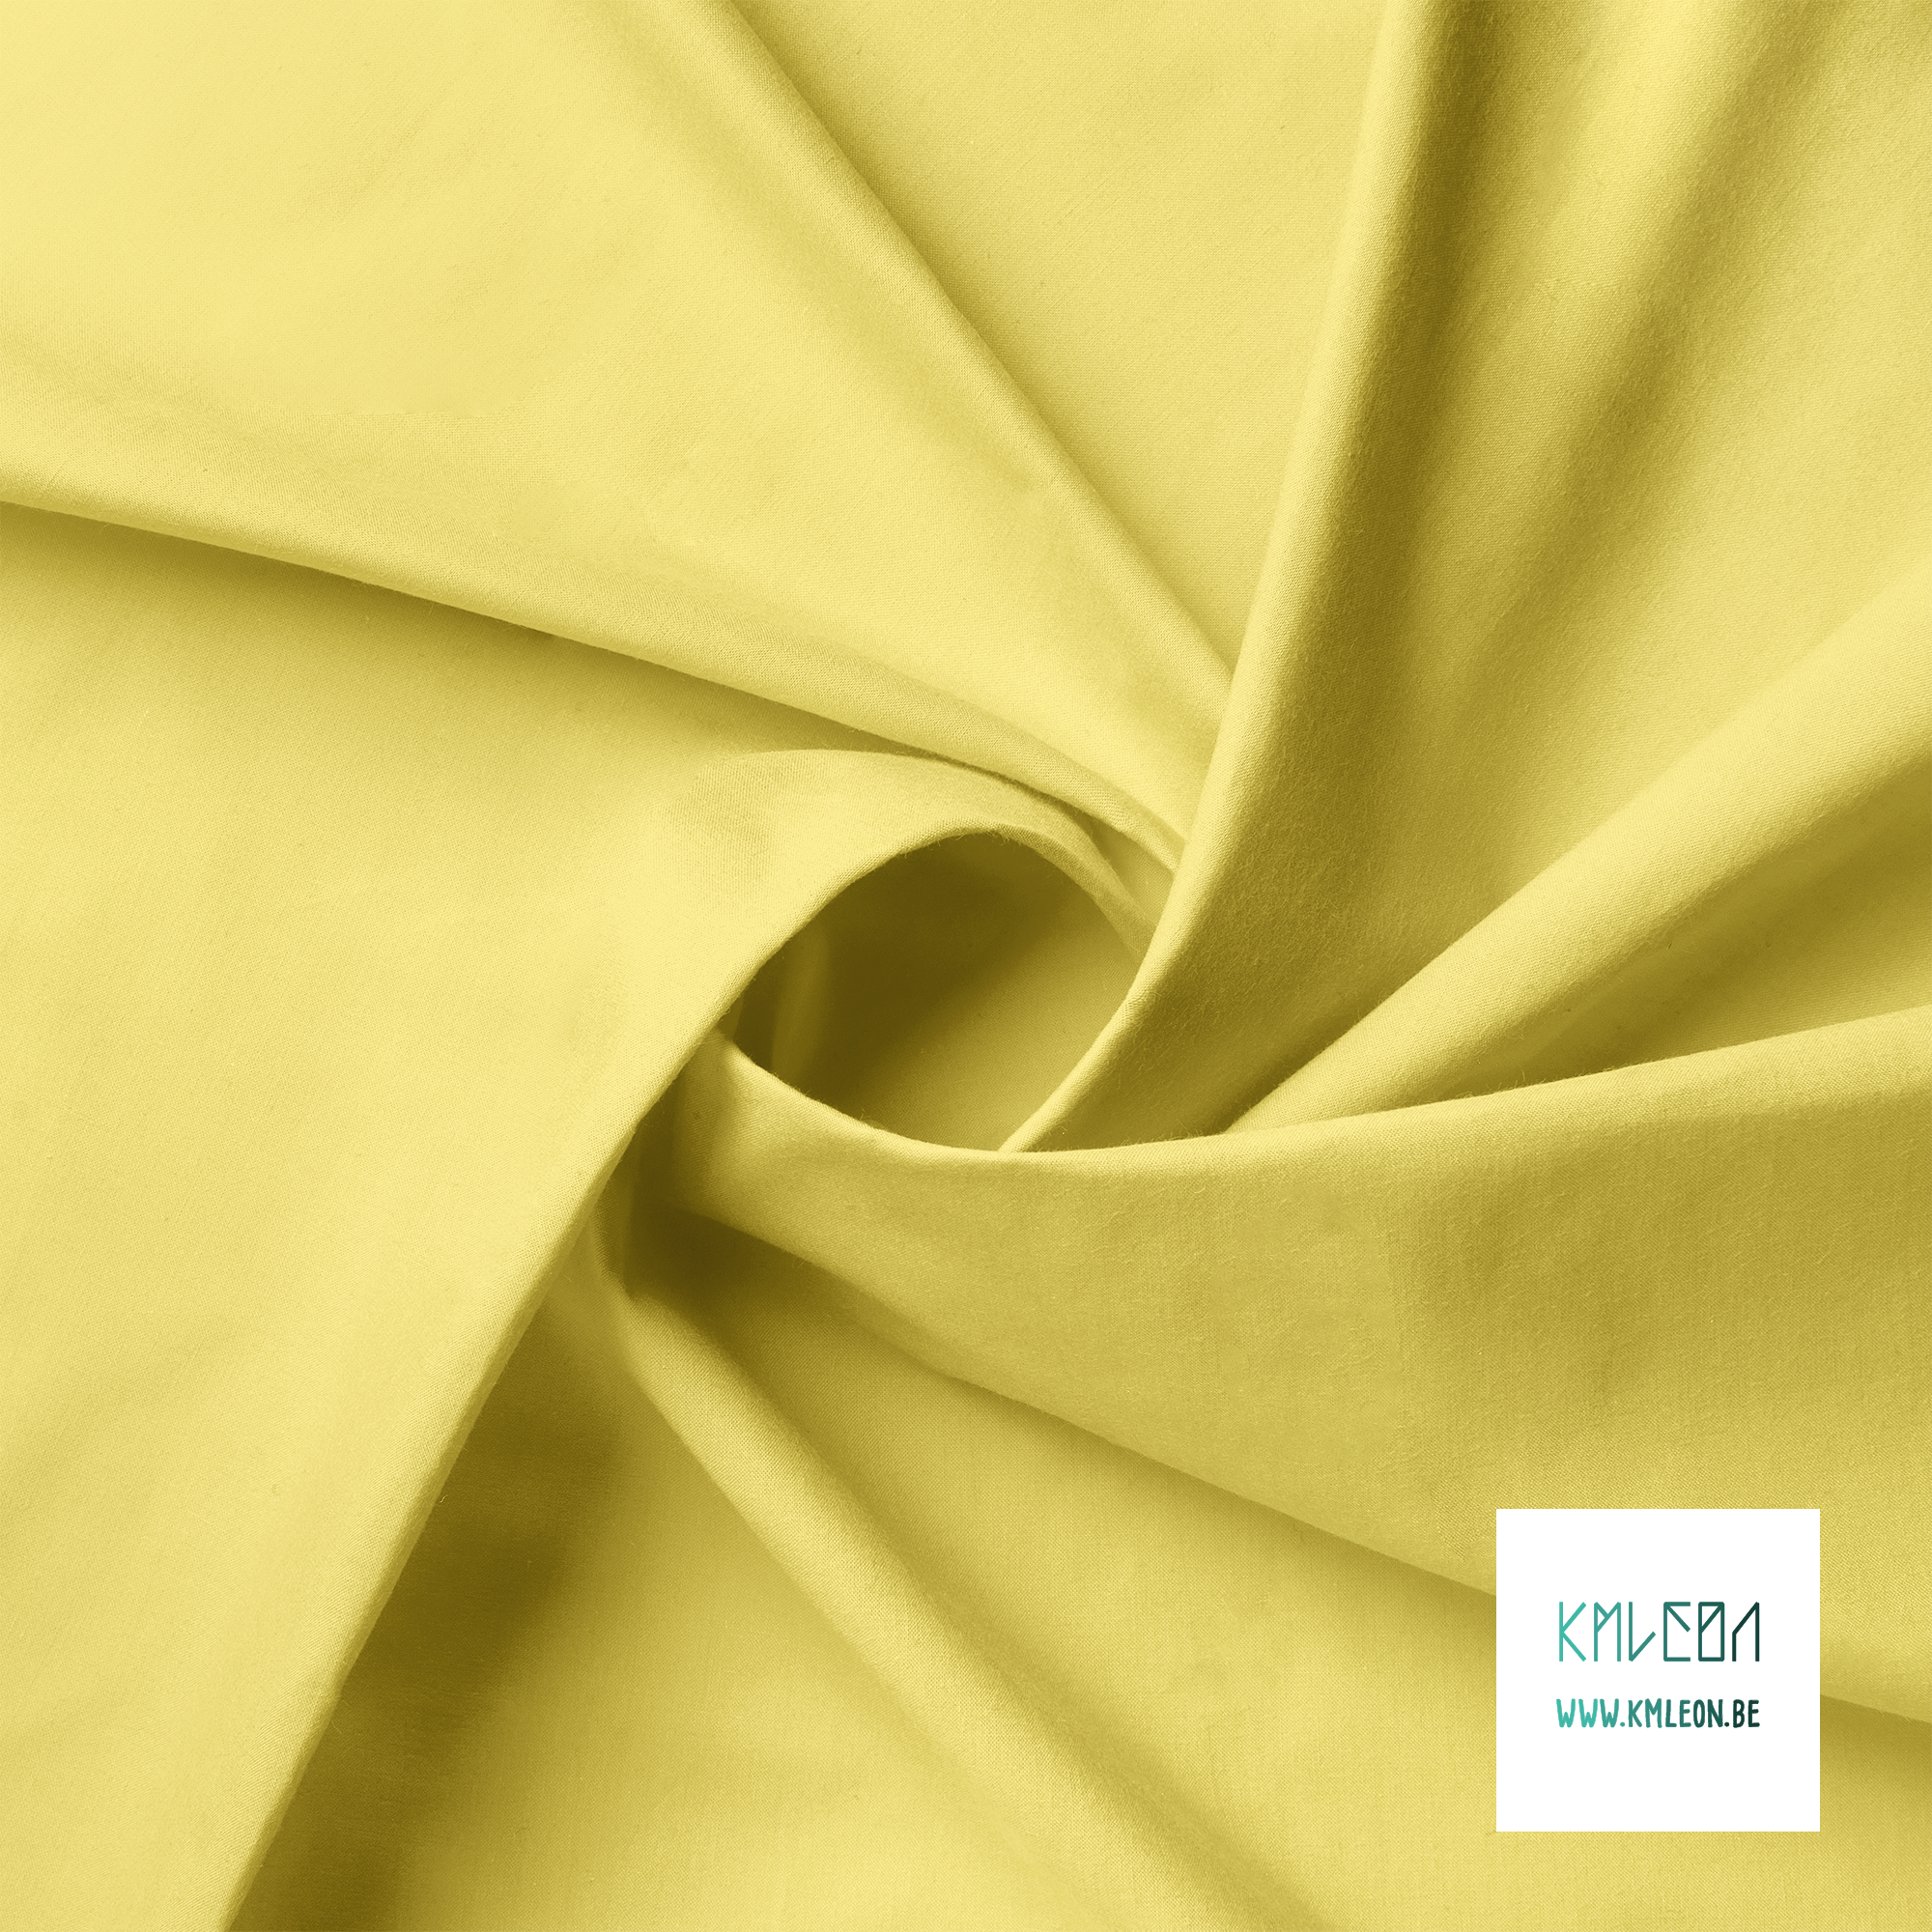 Solid lemon yellow fabric